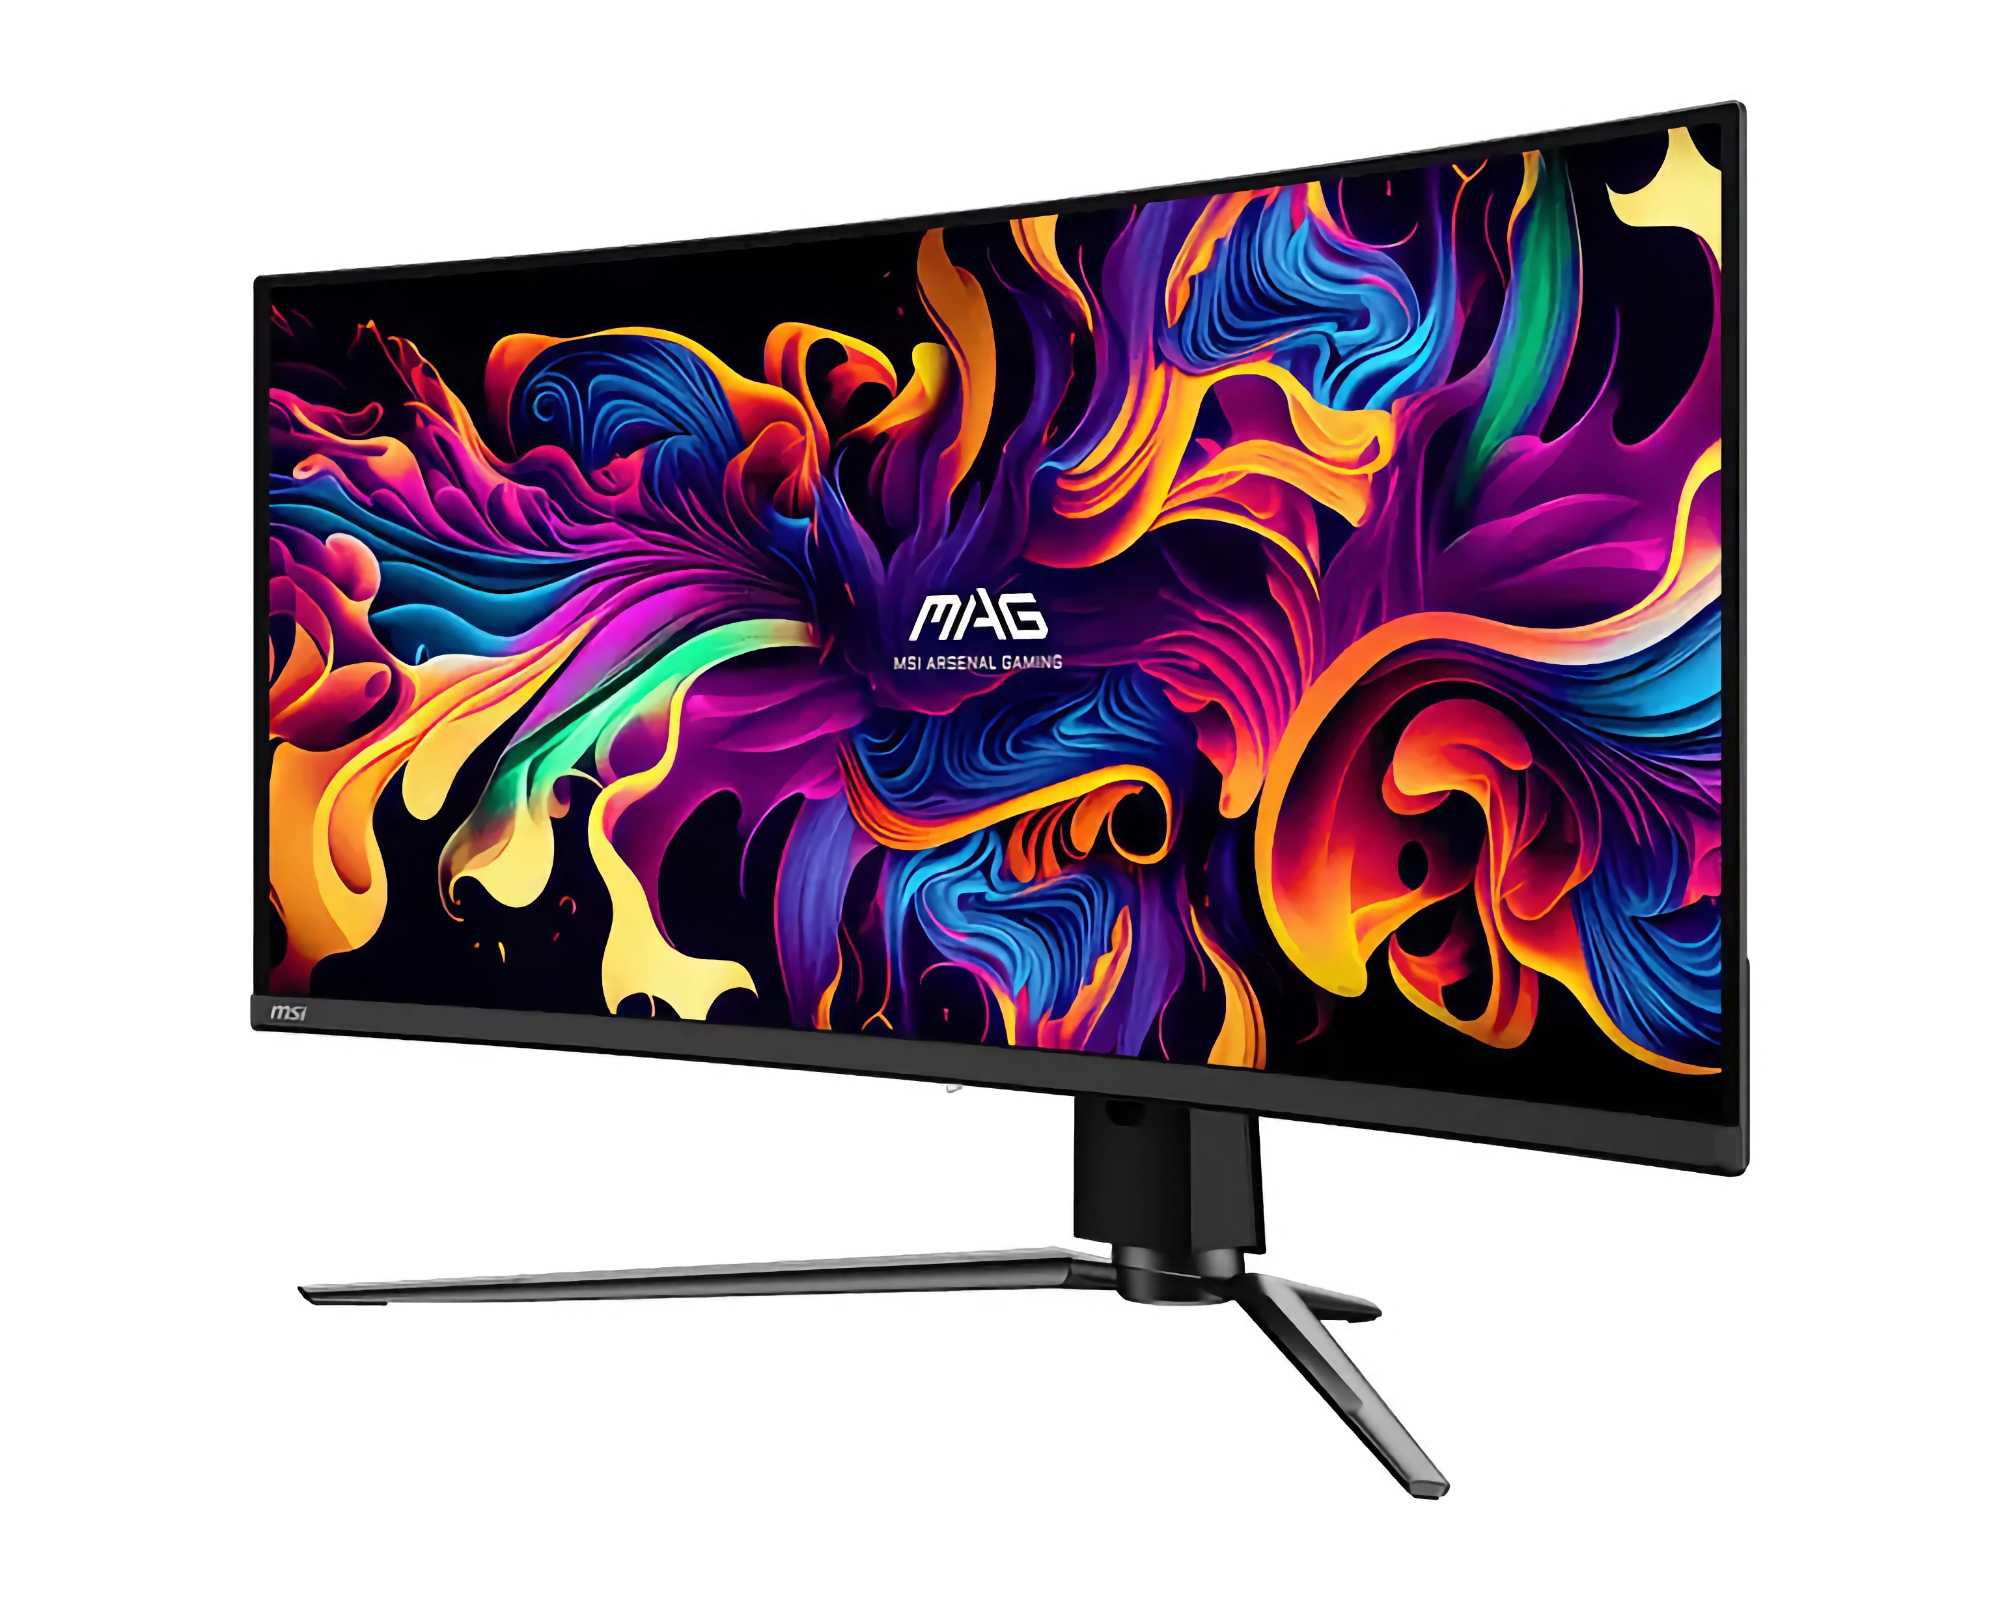 MSI presenta el monitor MAG 341CQP QD-OLED: pantalla curva de 175 Hz